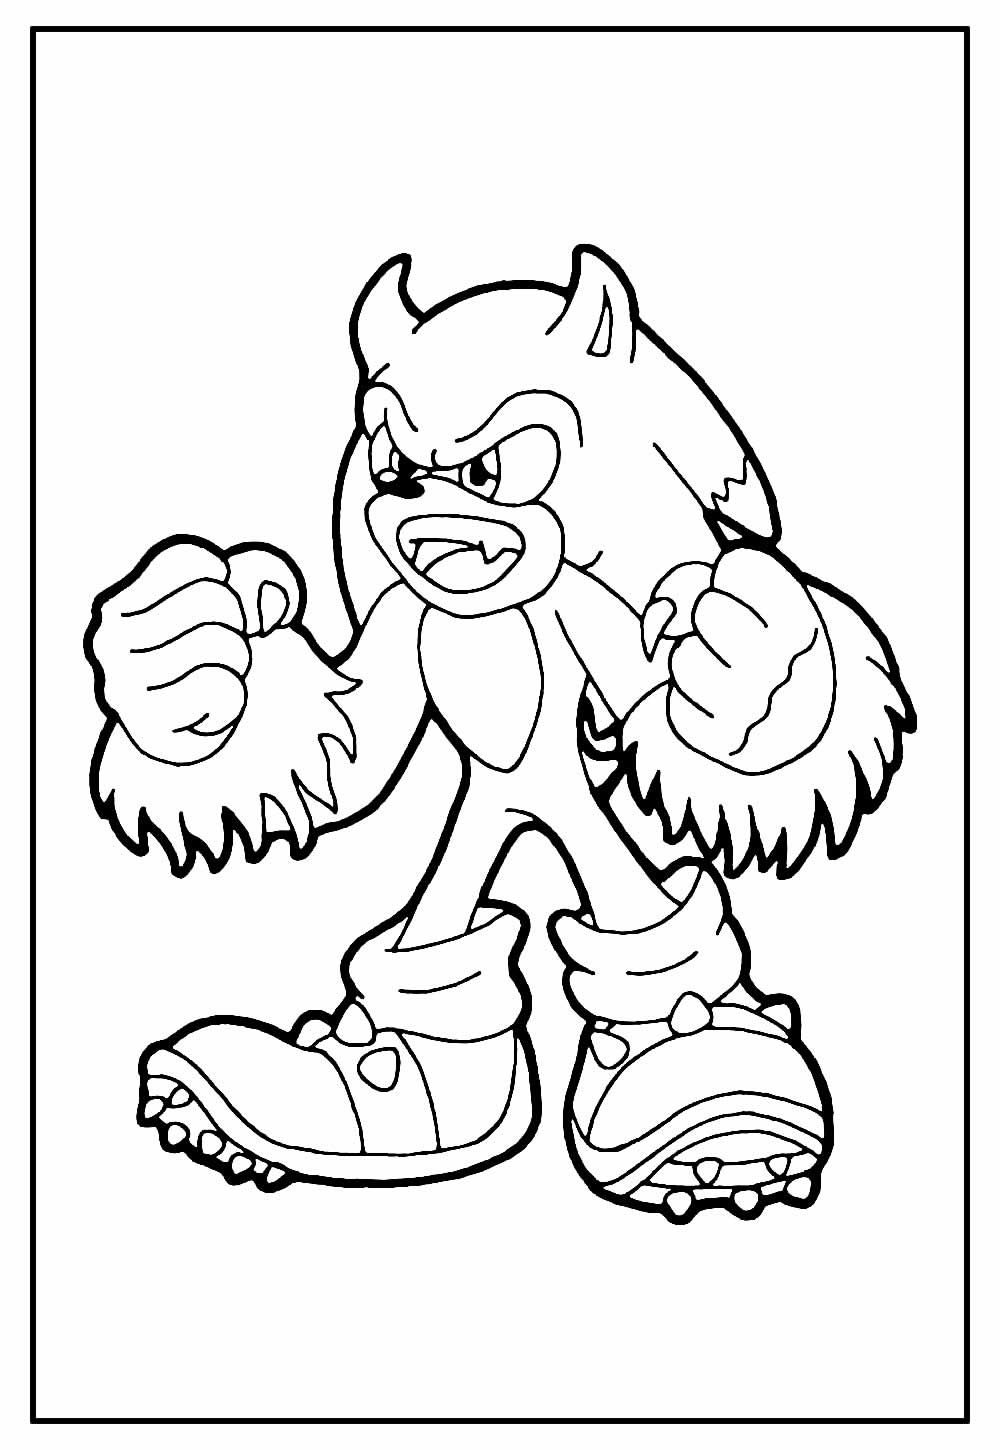 52 Desenhos do Sonic para Colorir e Imprimir Grátis